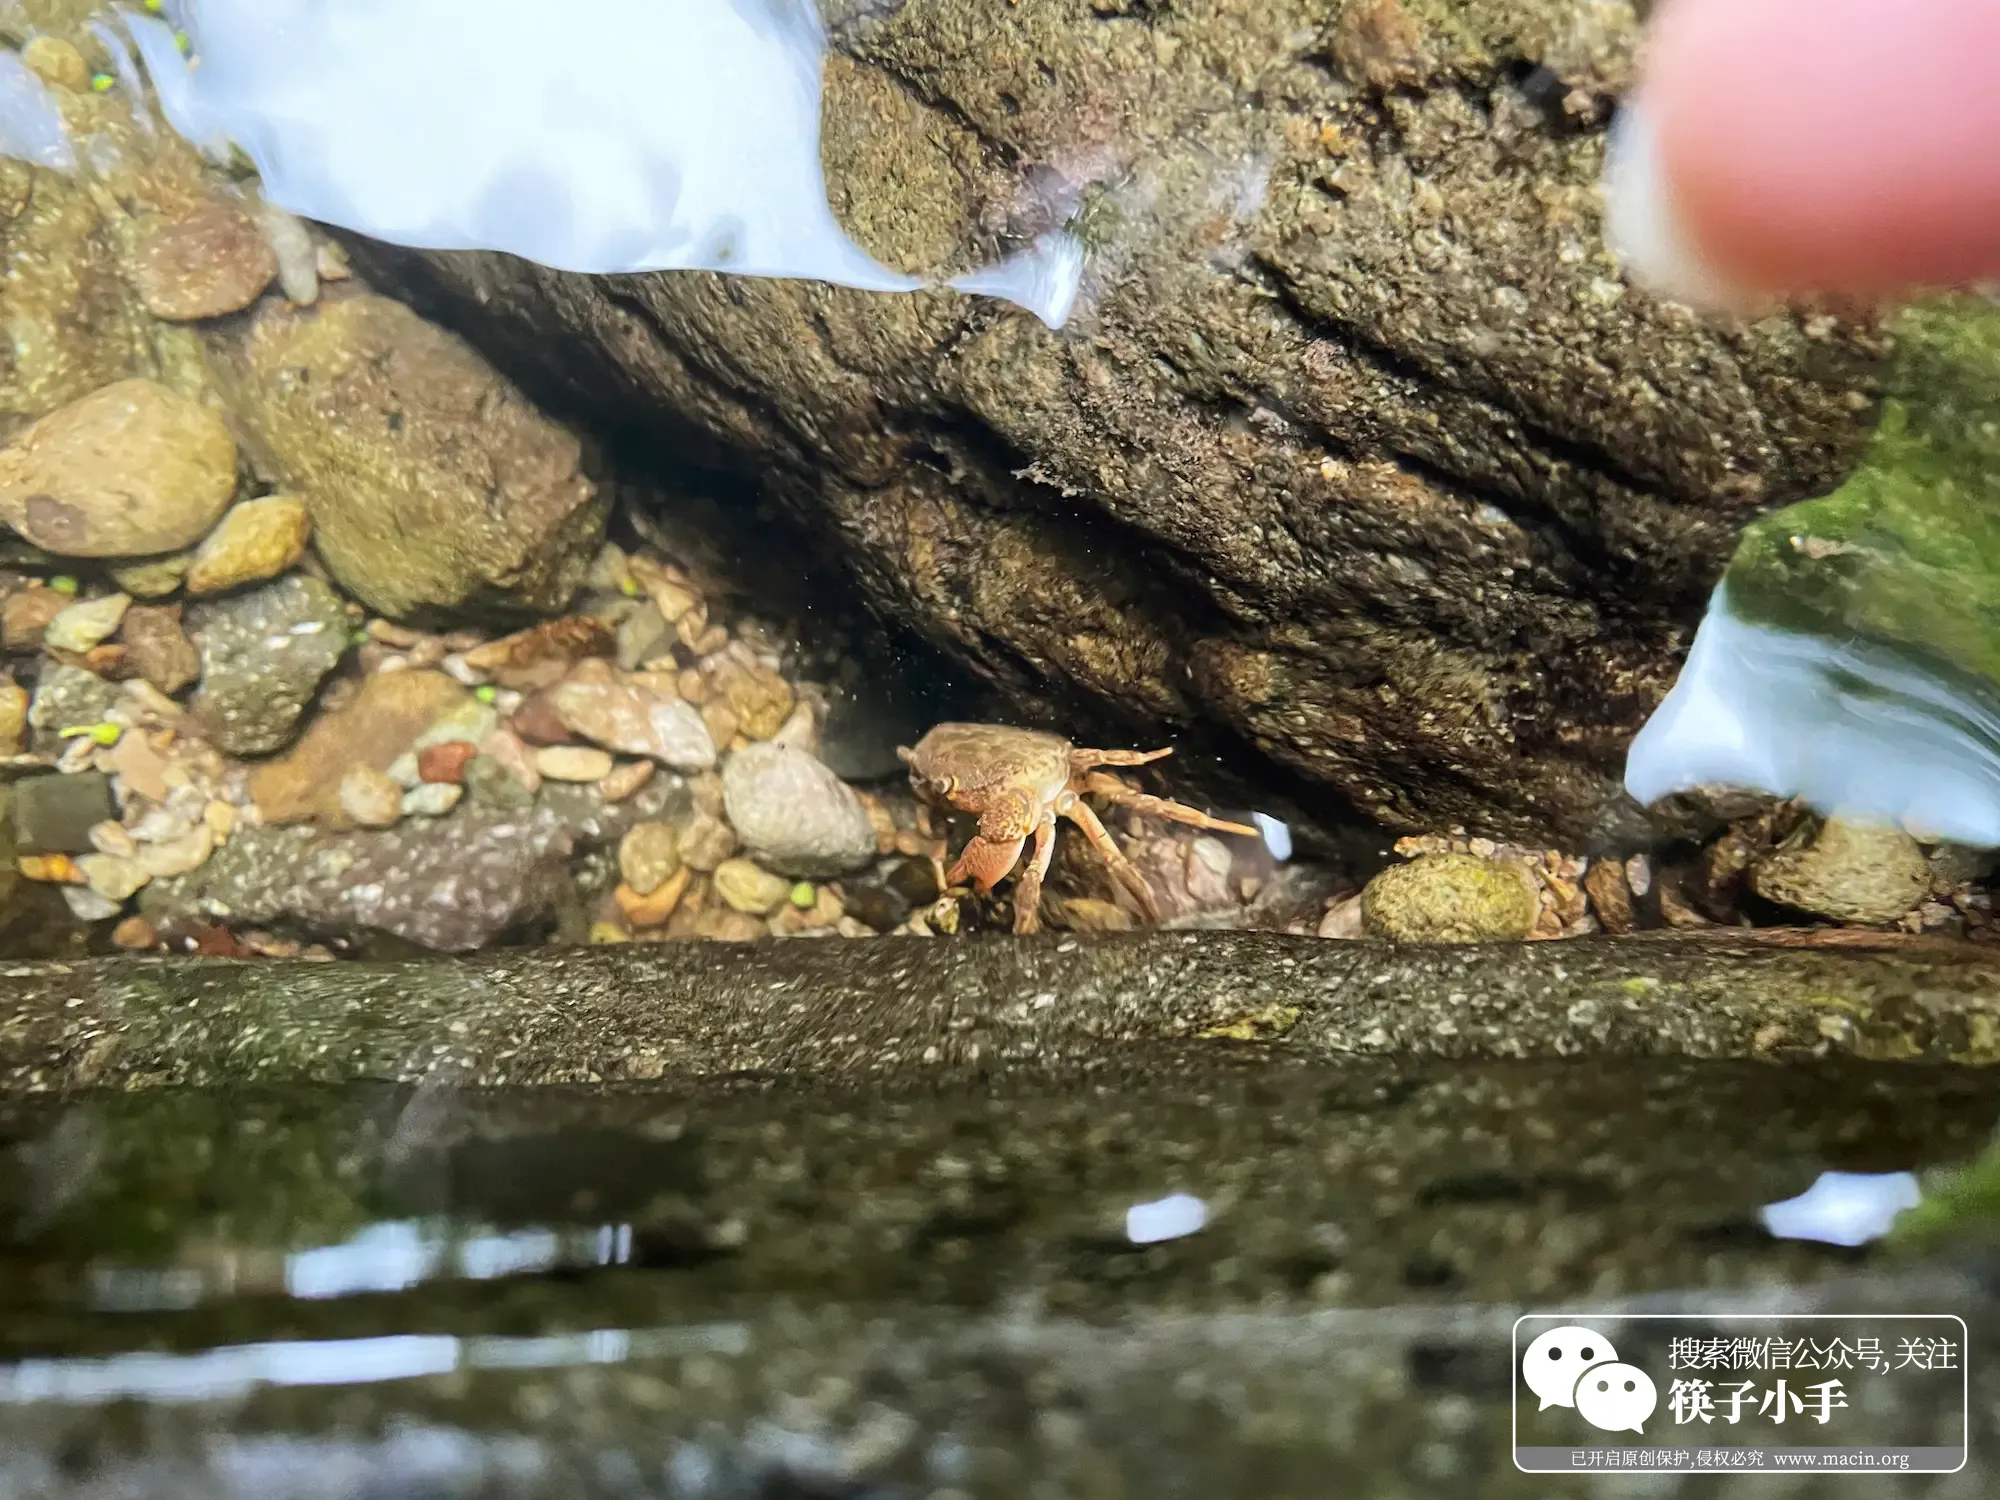 发现小螃蟹